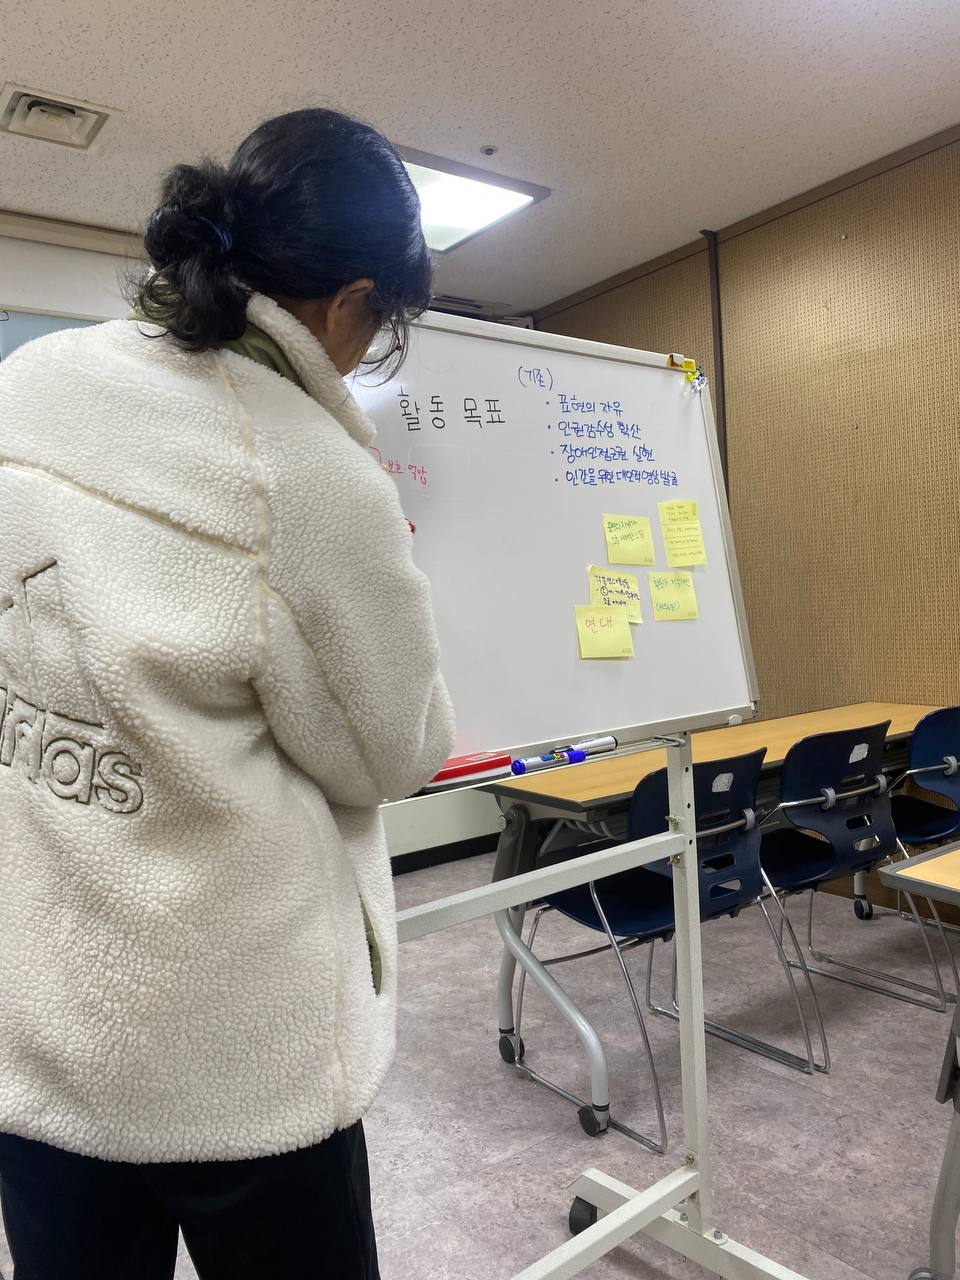 사진. 화이트보드 앞에 선 나기가 글자를 적고 있다. 보드에는 서울인권영화제의 활동목표가 적혀있고 의견이 적힌 포스트잇이 붙어있다.